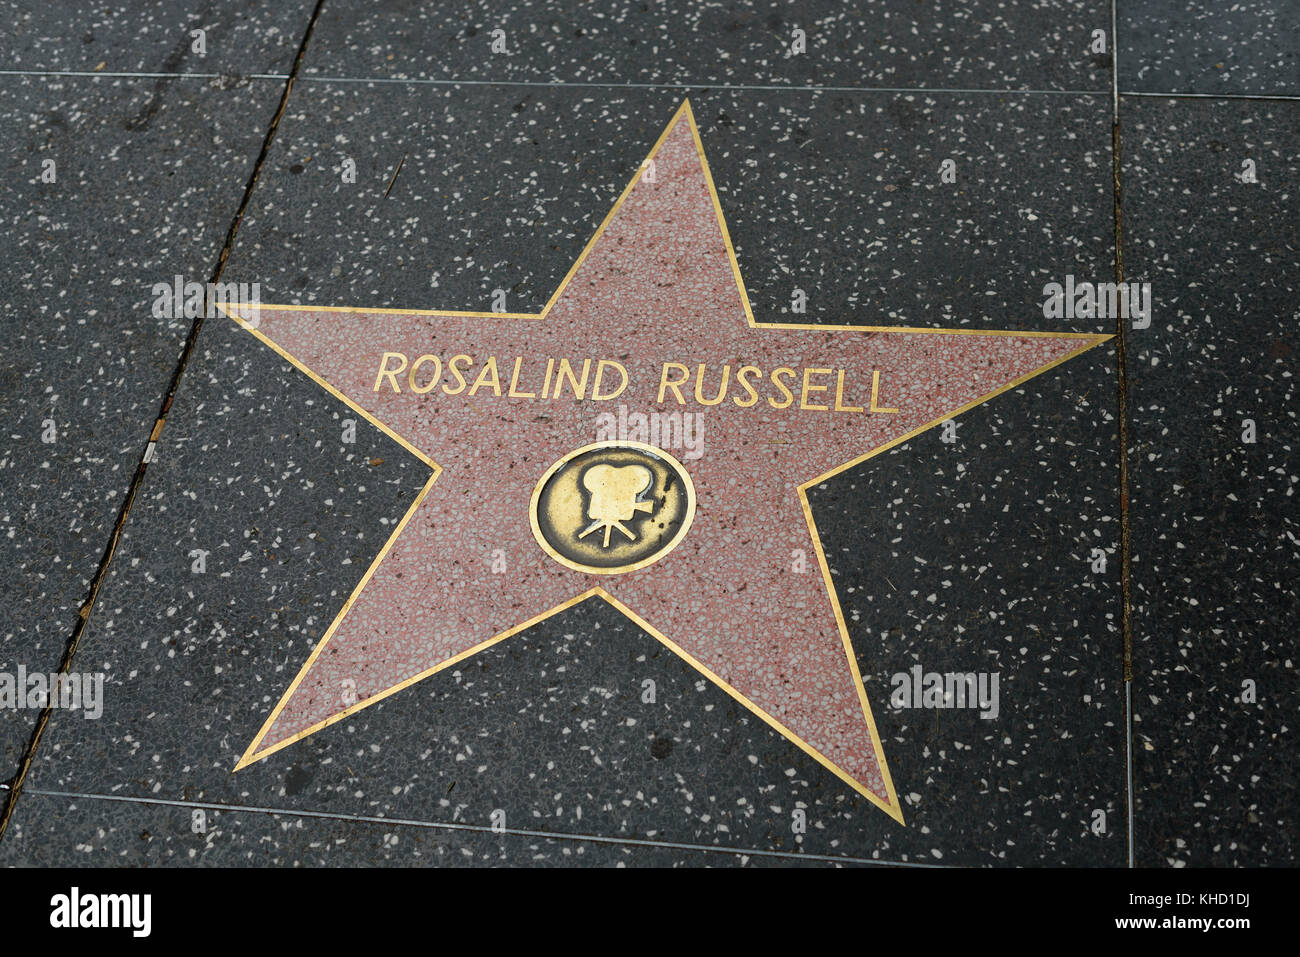 HOLLYWOOD, CA - 06 DE DICIEMBRE: Rosalind Russell estrella en el Paseo de la Fama de Hollywood en Hollywood, California el 6 de diciembre de 2016. Foto de stock